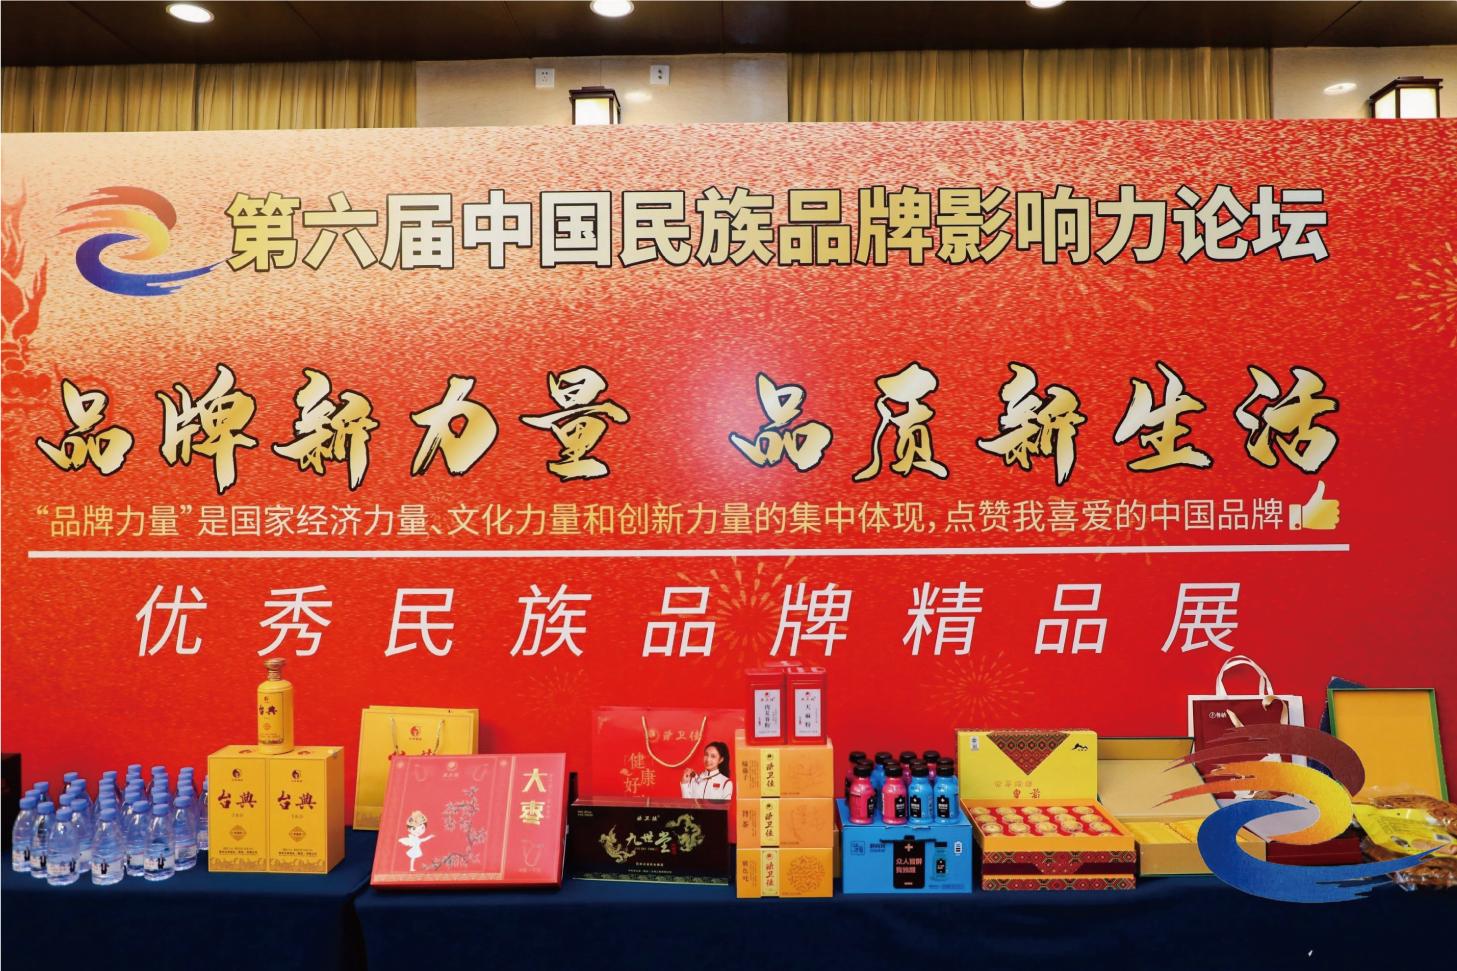 中国品牌集中亮相“品牌新力量 品质新生活·优秀民族品牌精品展”